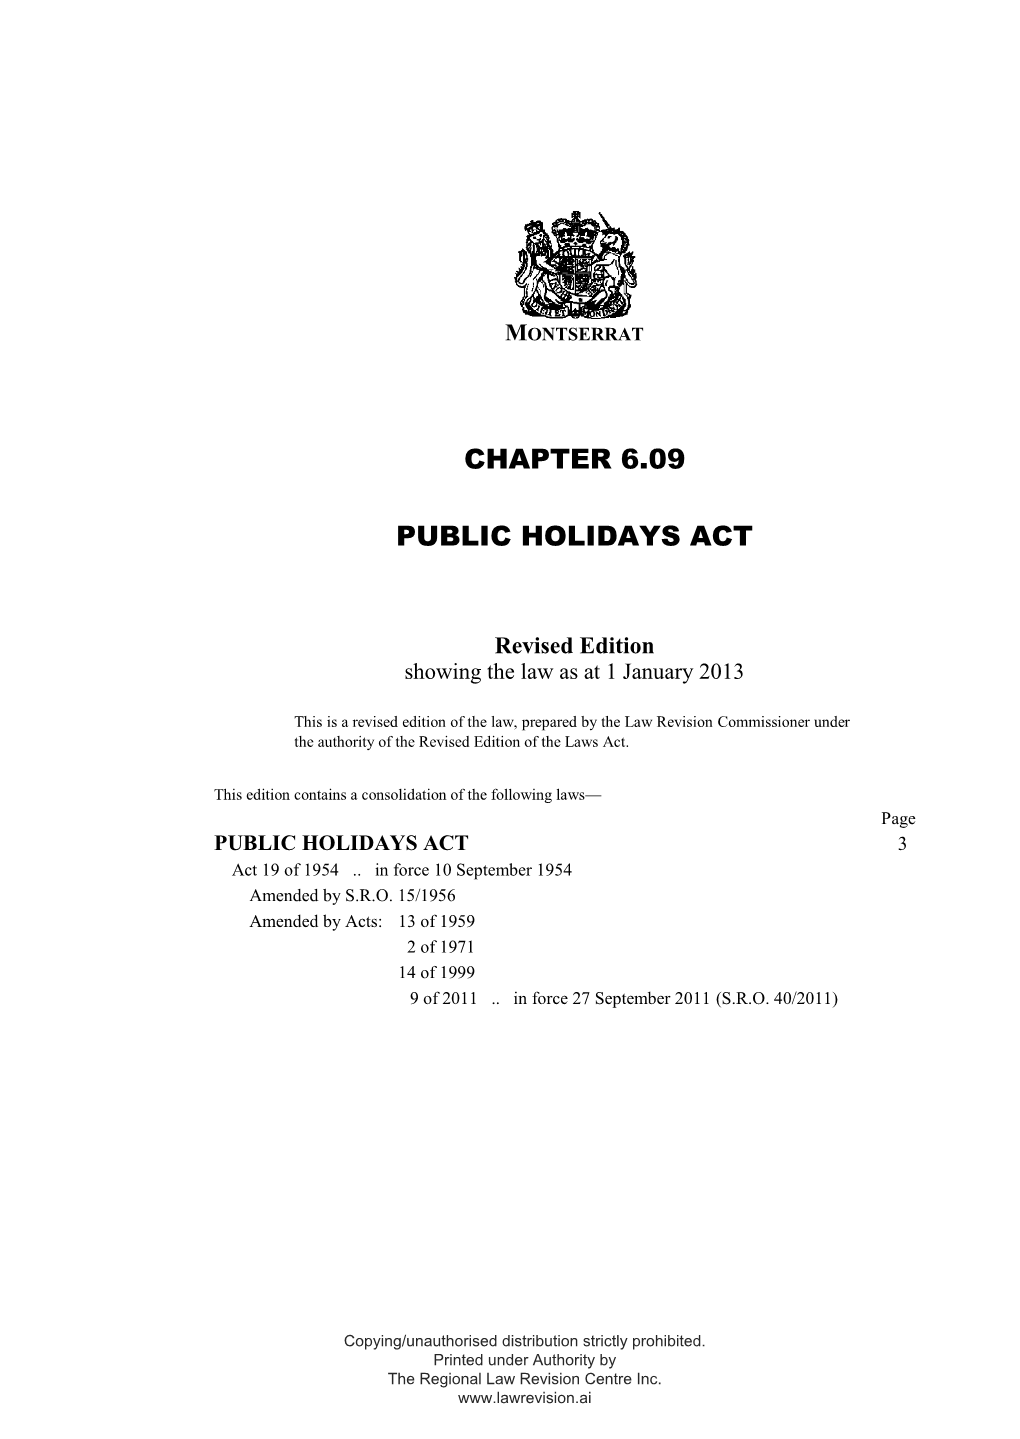 Public Holidays Act